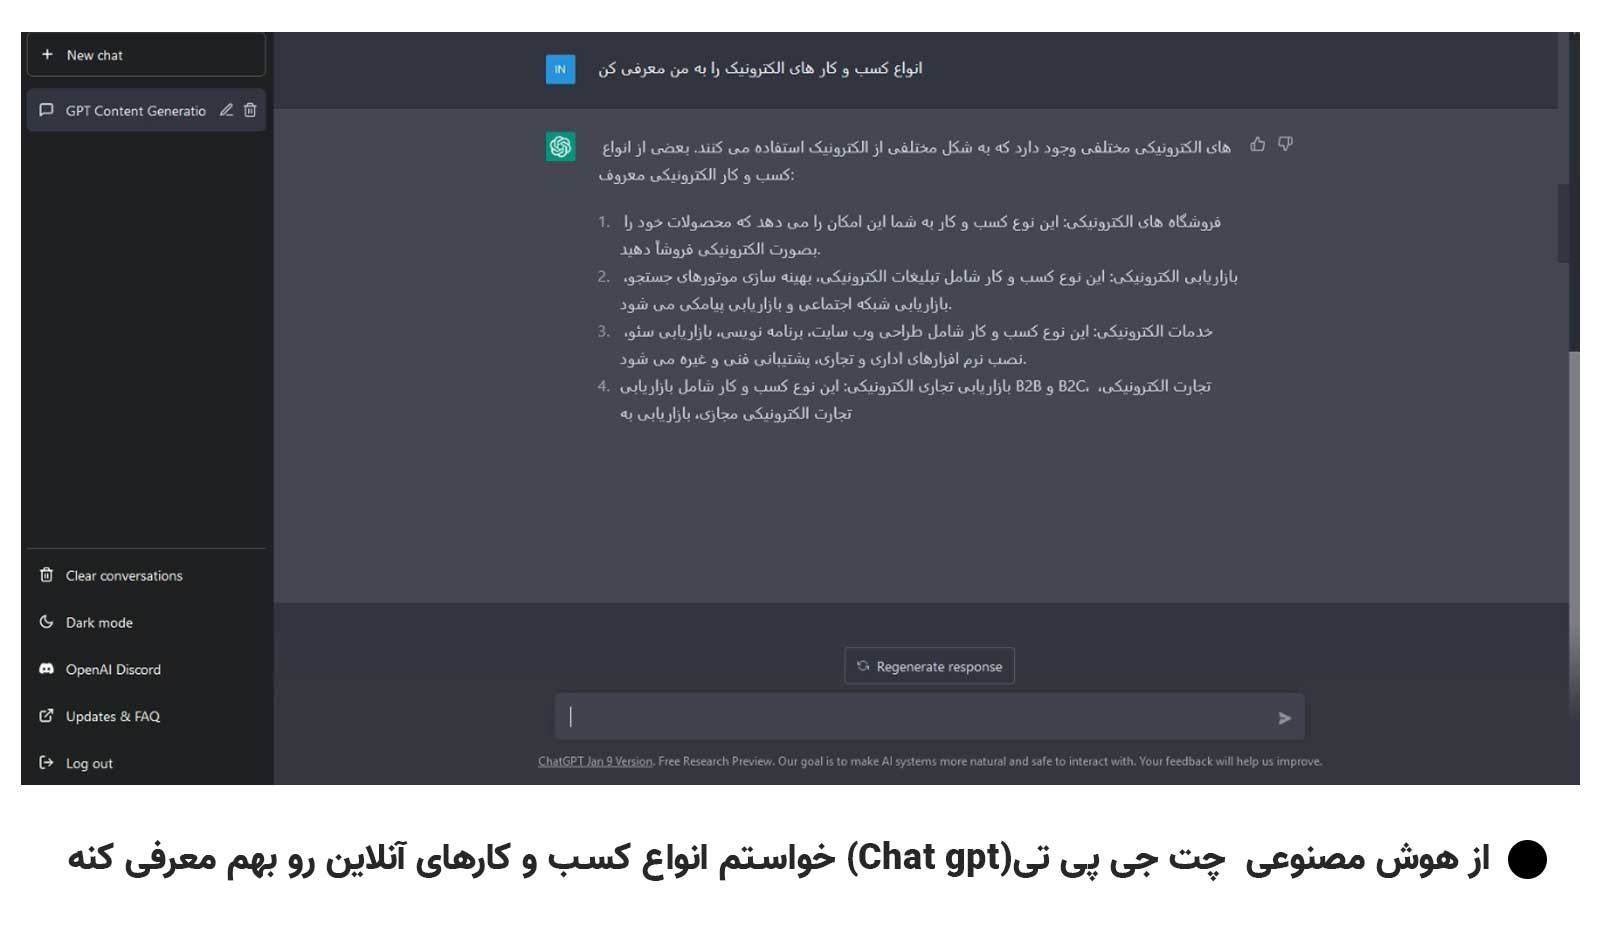 فارسی صحبت کردن با چت GPT